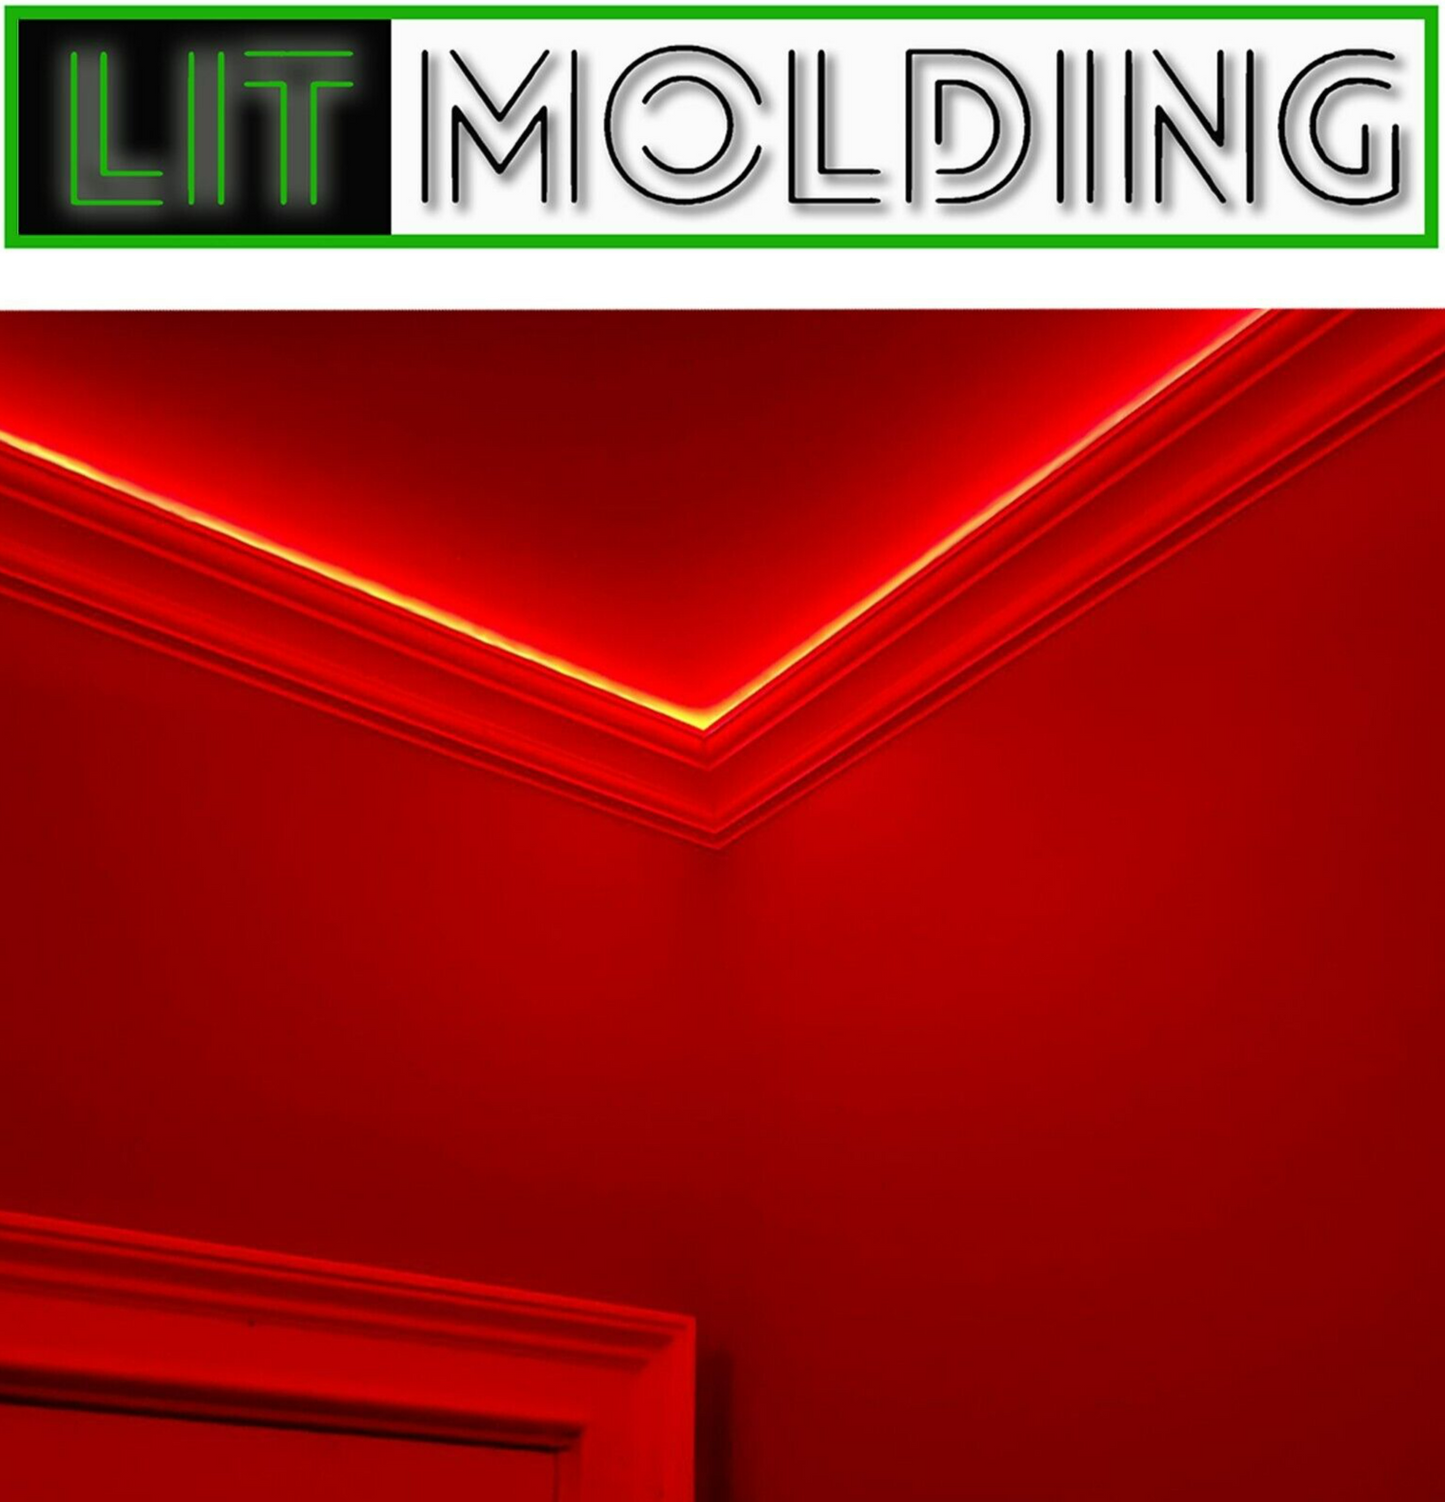 4.5" LIT Molding LED backlit crown molding 100' kit.